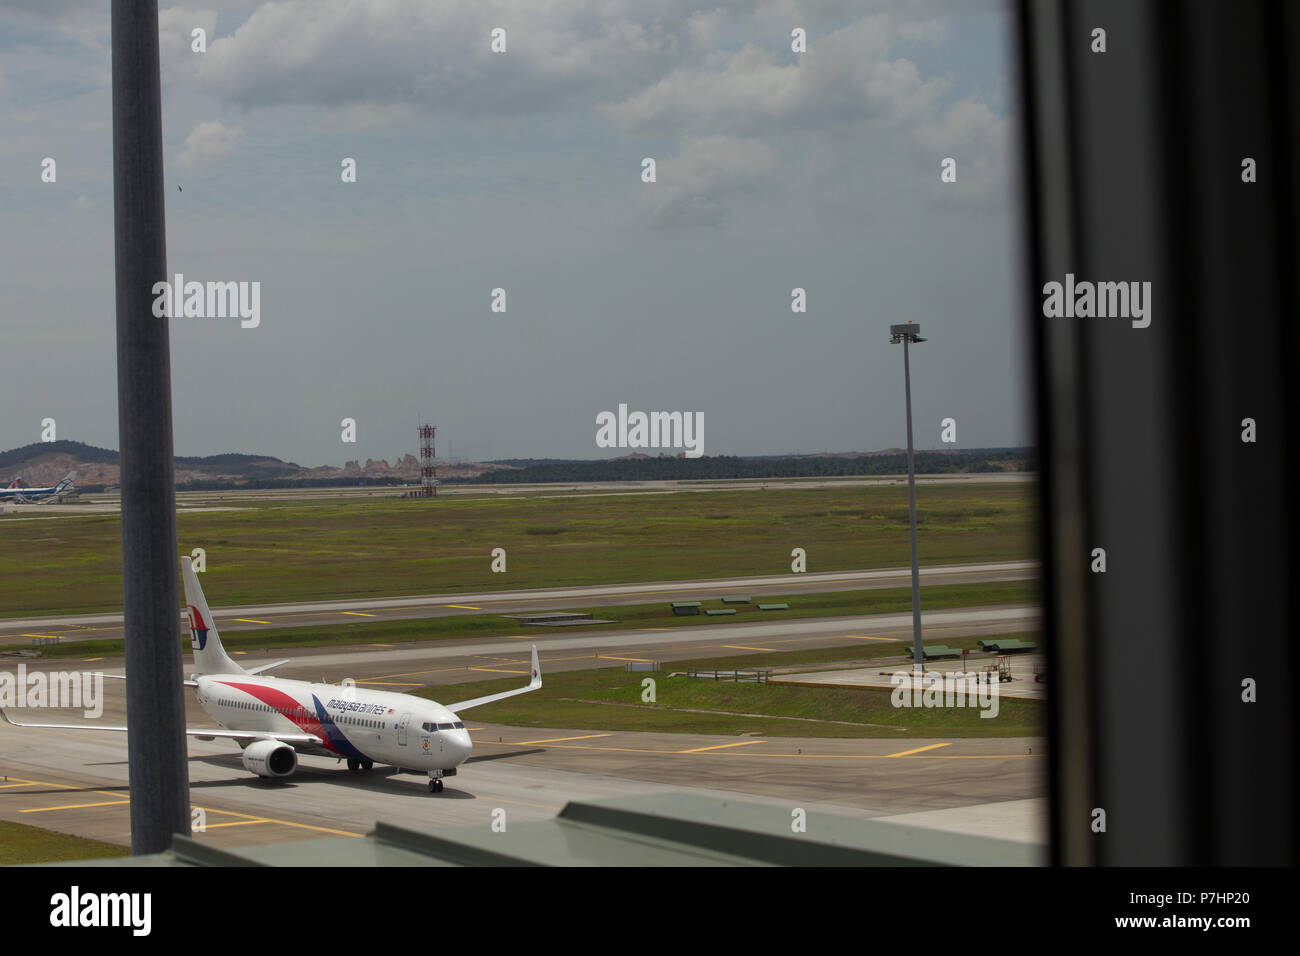 La Malaysian Airlines Boeing 737 taxis pour le terminal après l'atterrissage à l'Aéroport International de Kuala Lumpur en Malaisie. Banque D'Images